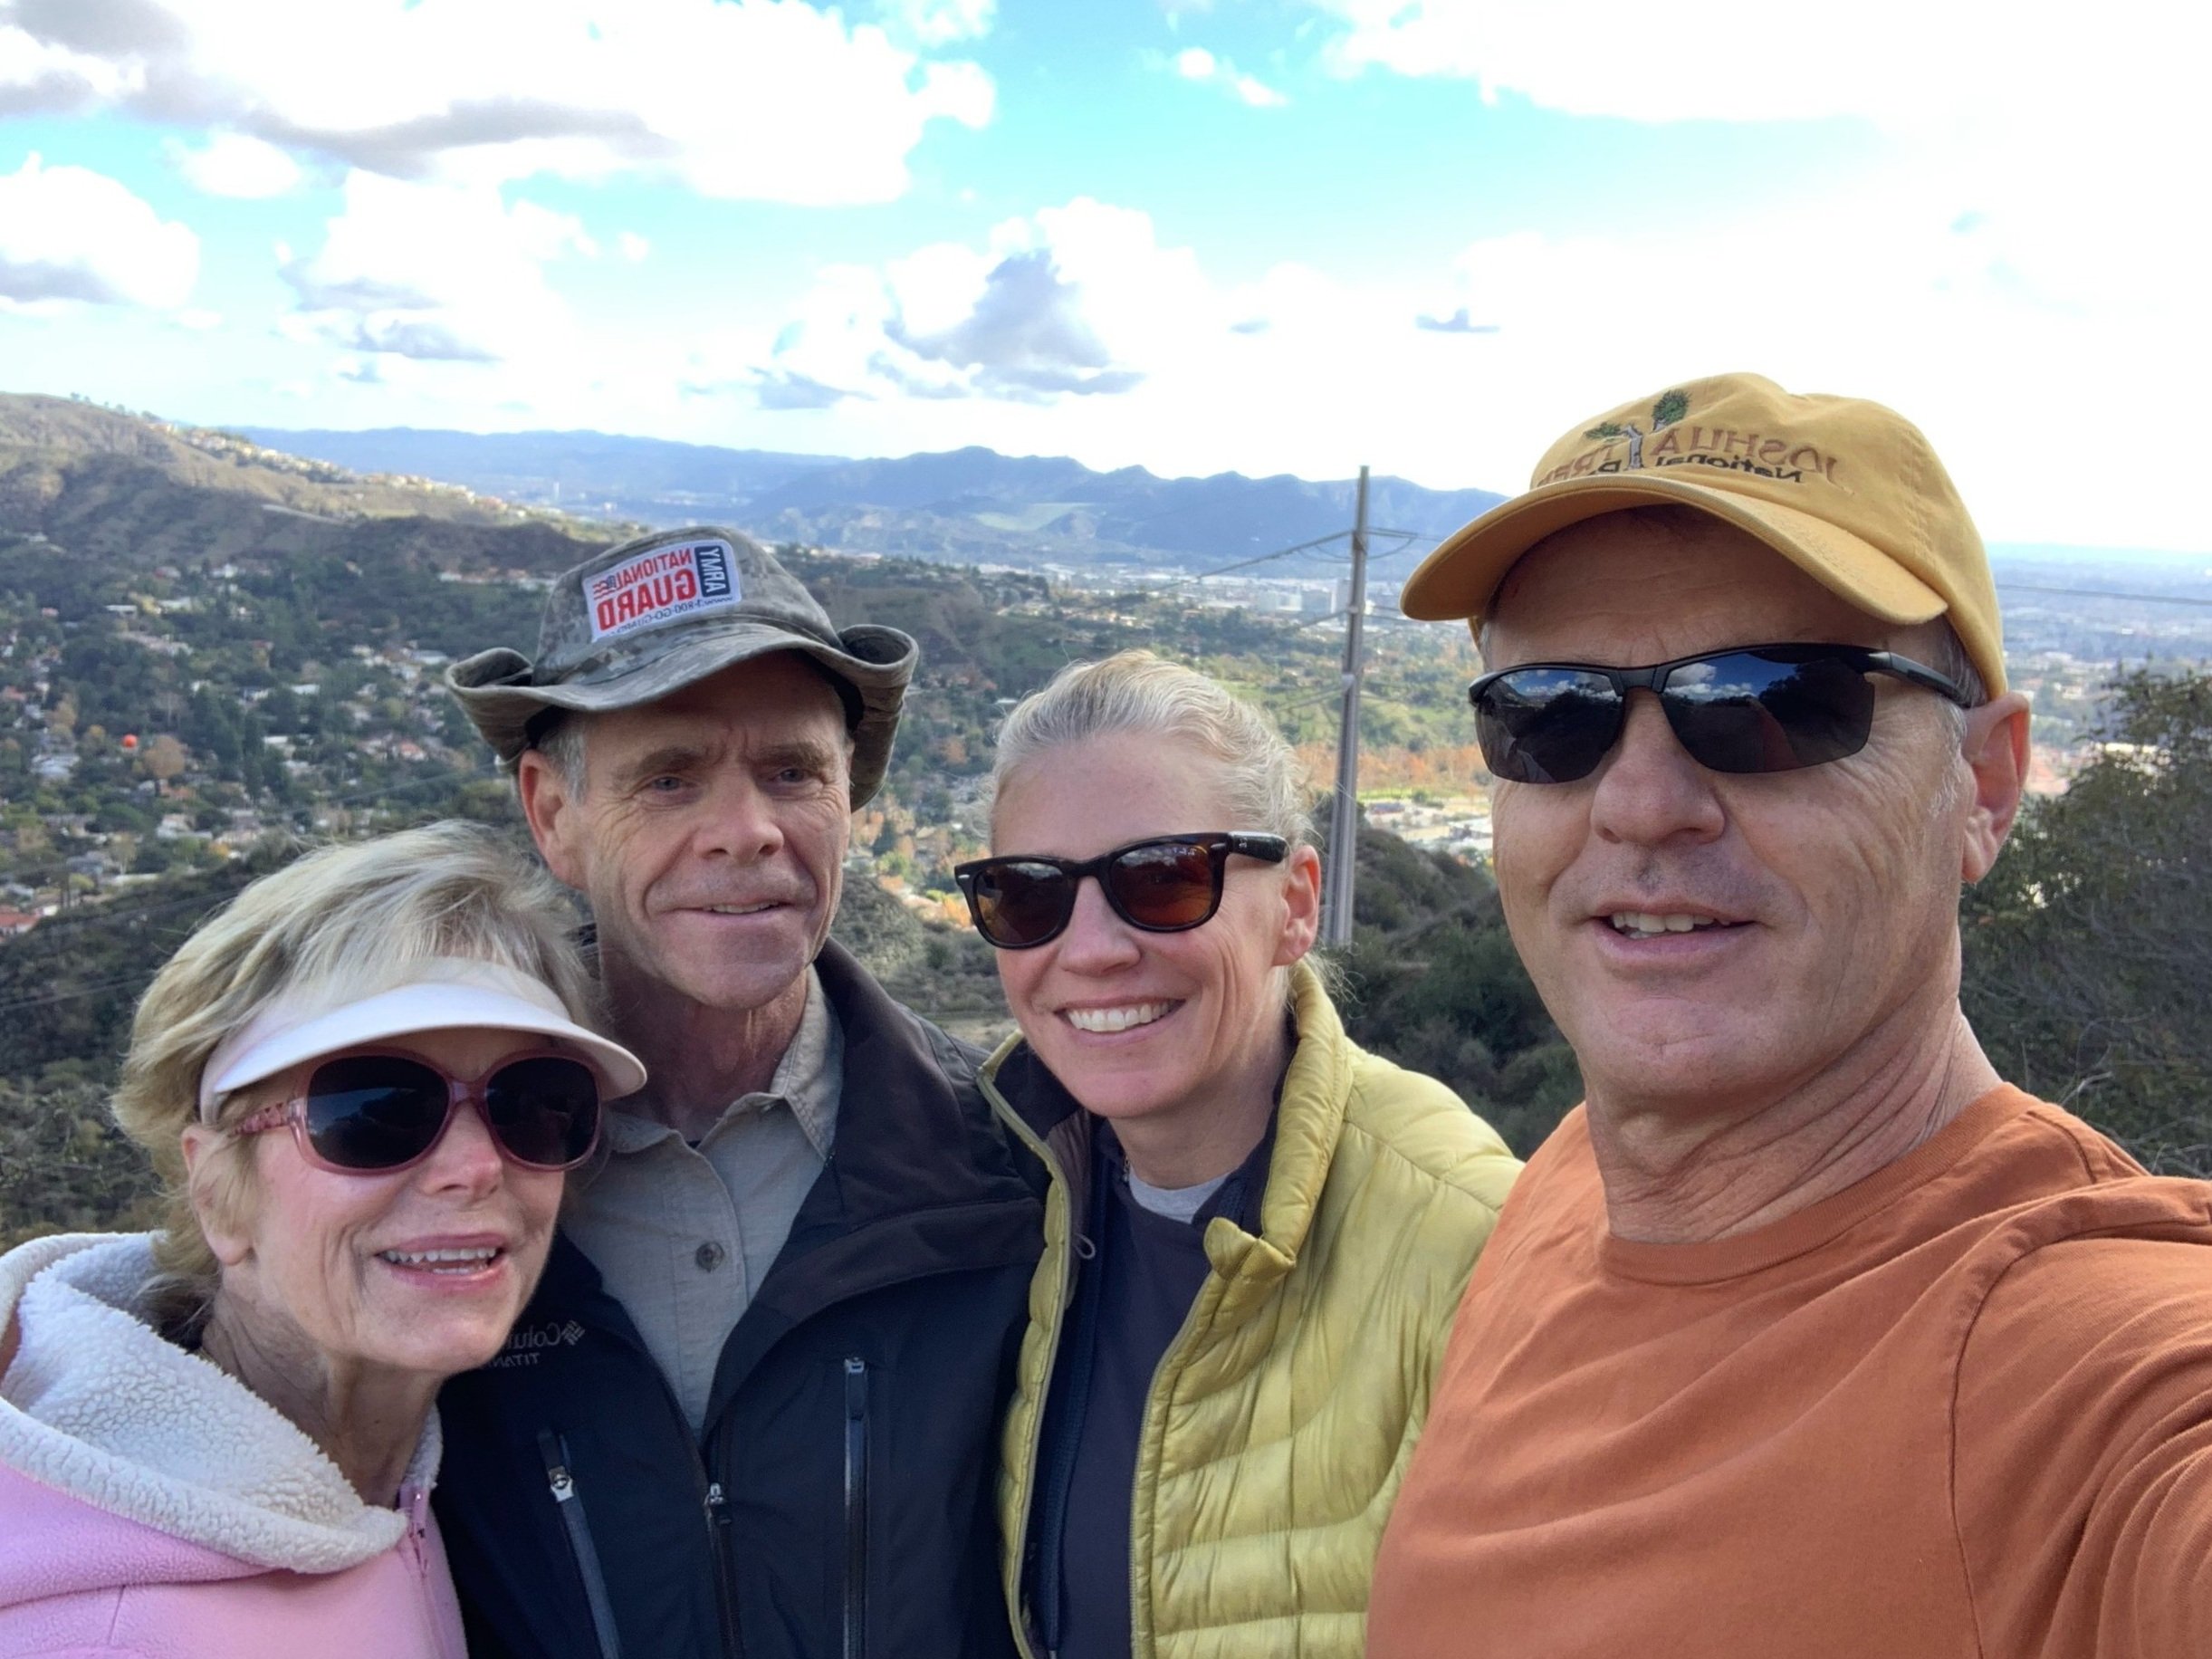 Post Christmas hike with dad, Evan and Judi